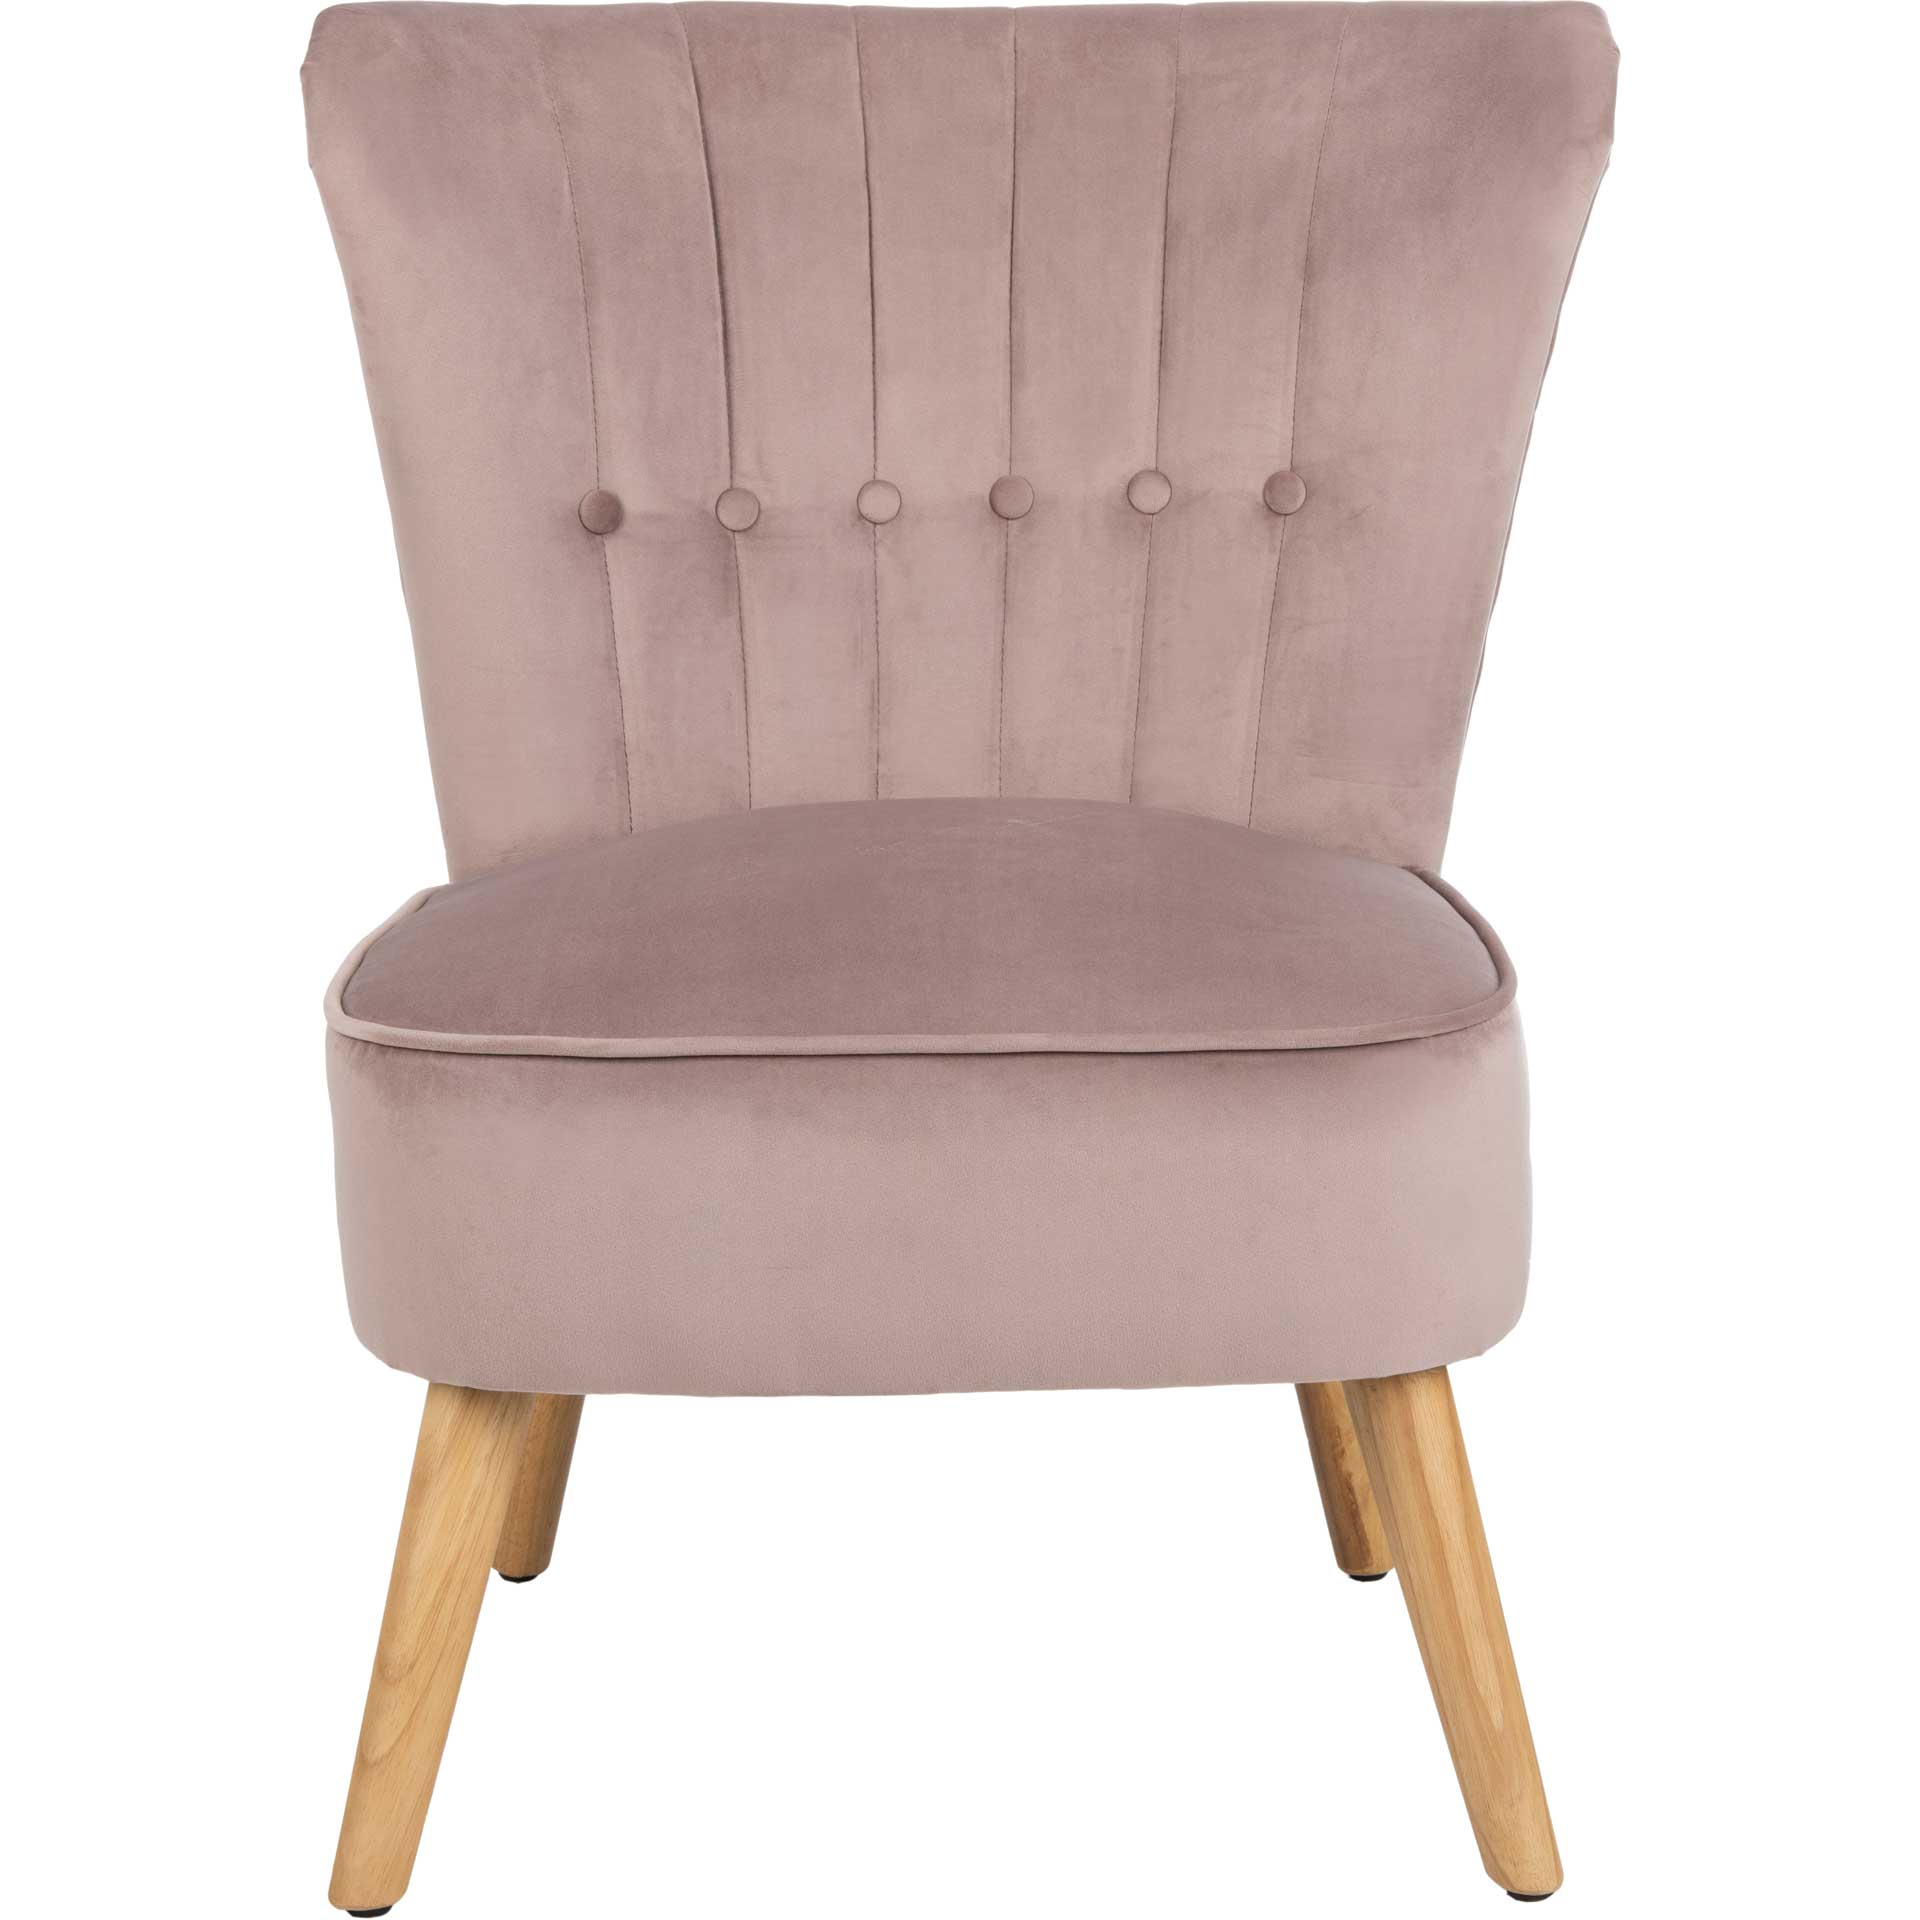 Juliet Mid Century Accent Chair Mauve/Natural